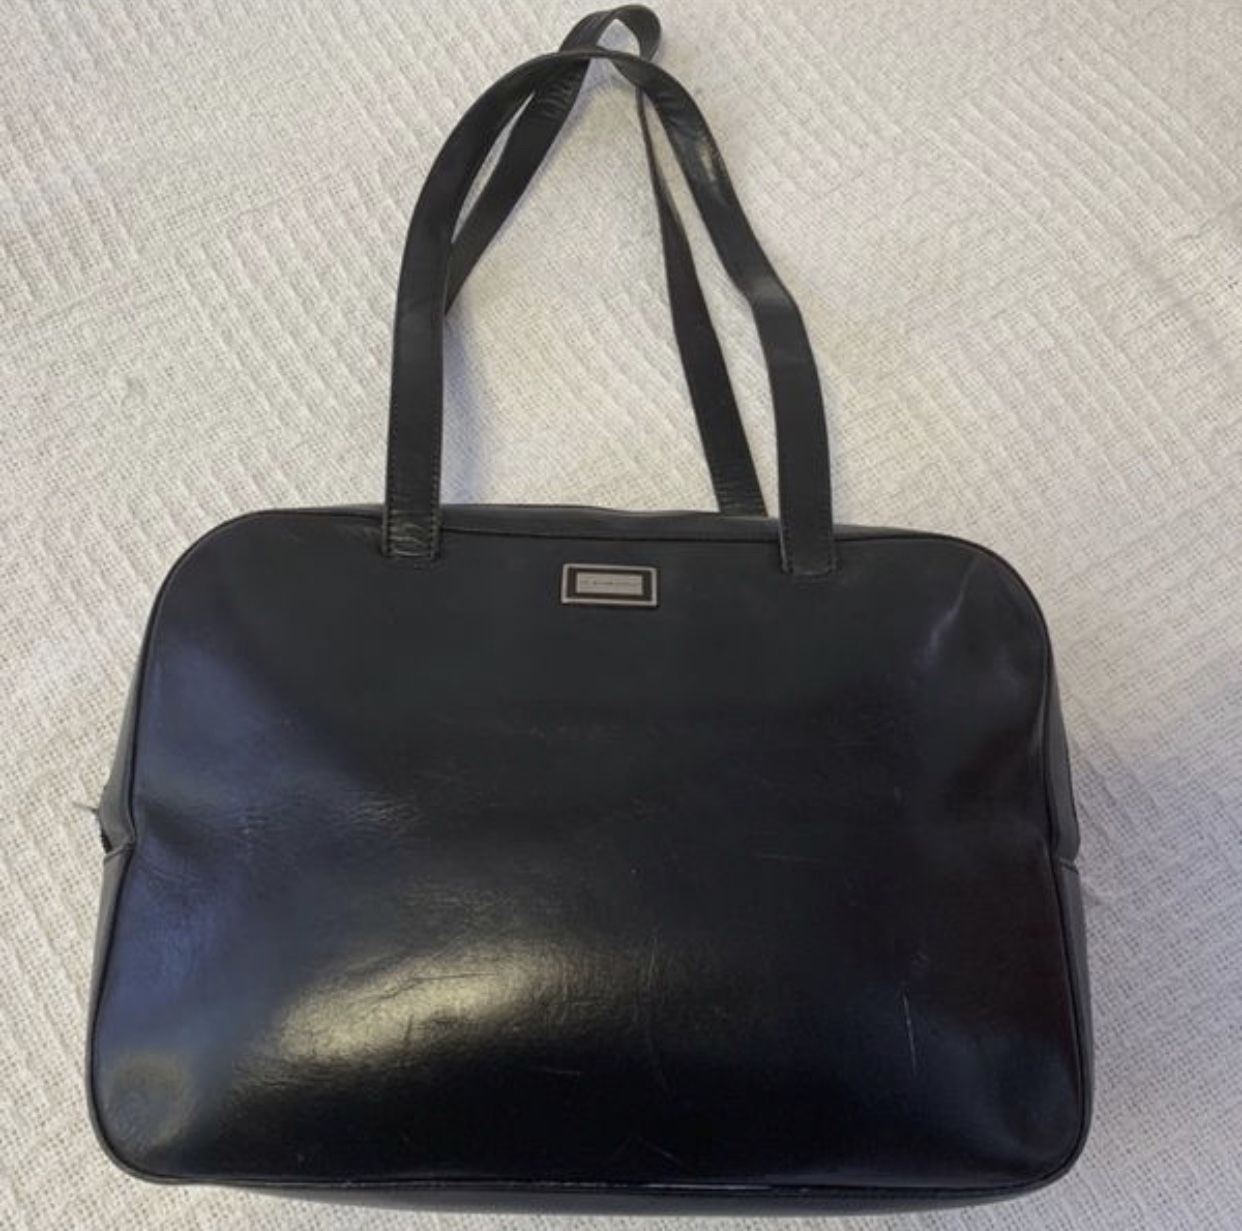 Burberry black leather shoulder bag for women